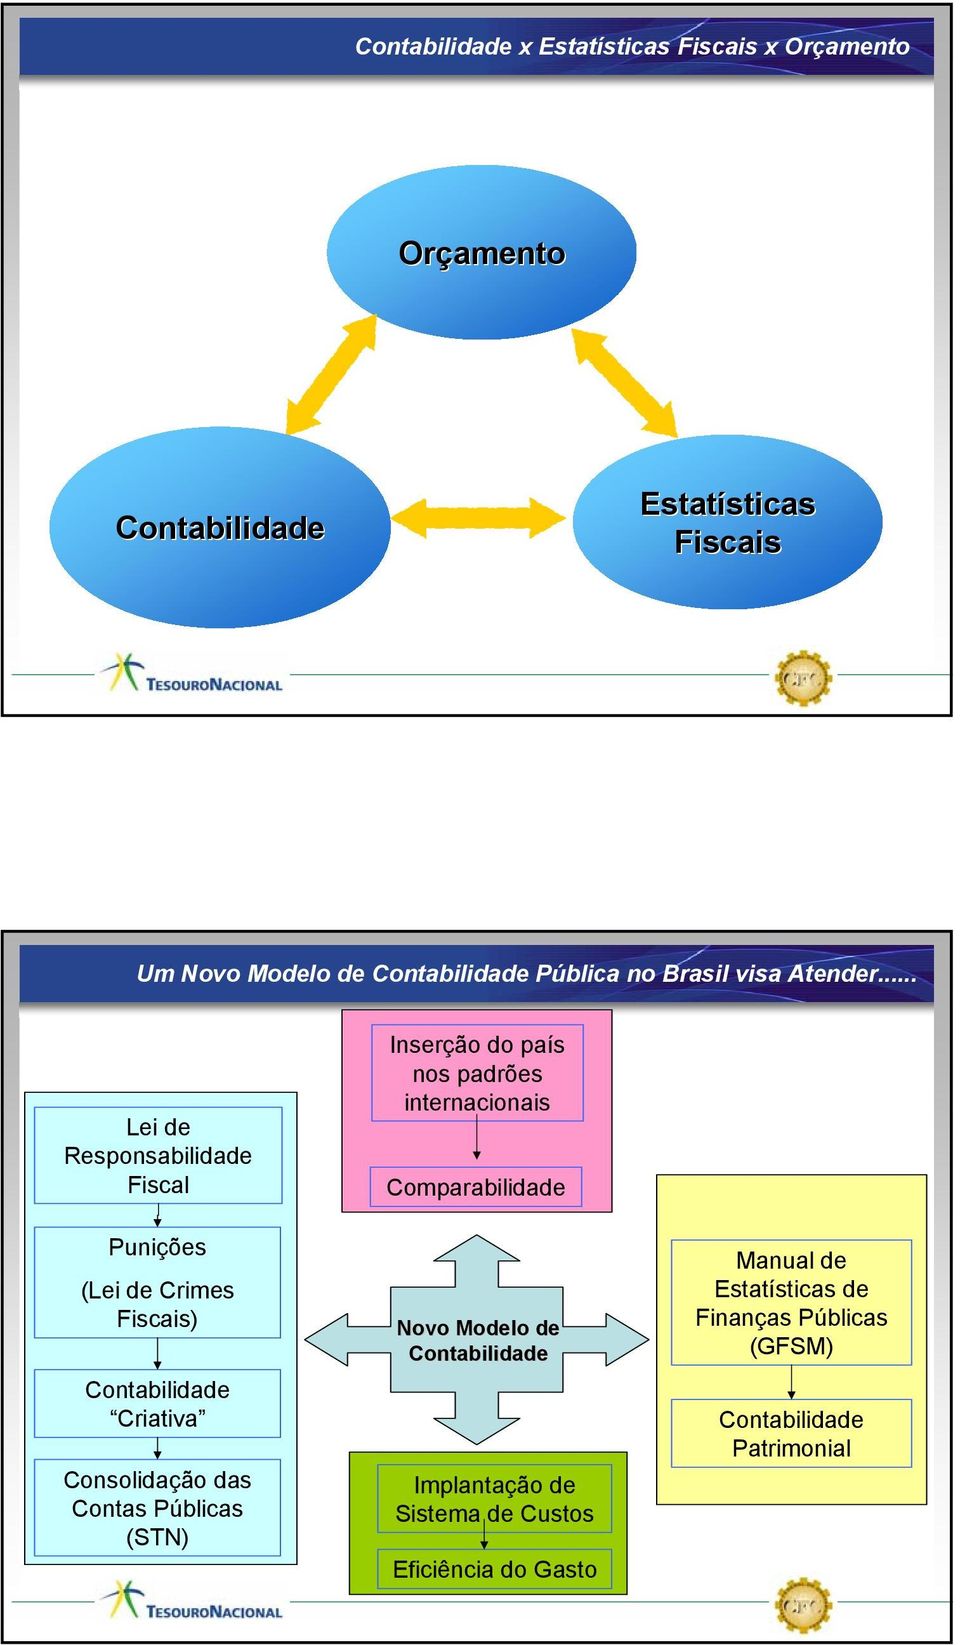 Criativa Consolidação das Contas Públicas (STN) Inserção do país nos padrões internacionais Comparabilidade Novo Modelo de